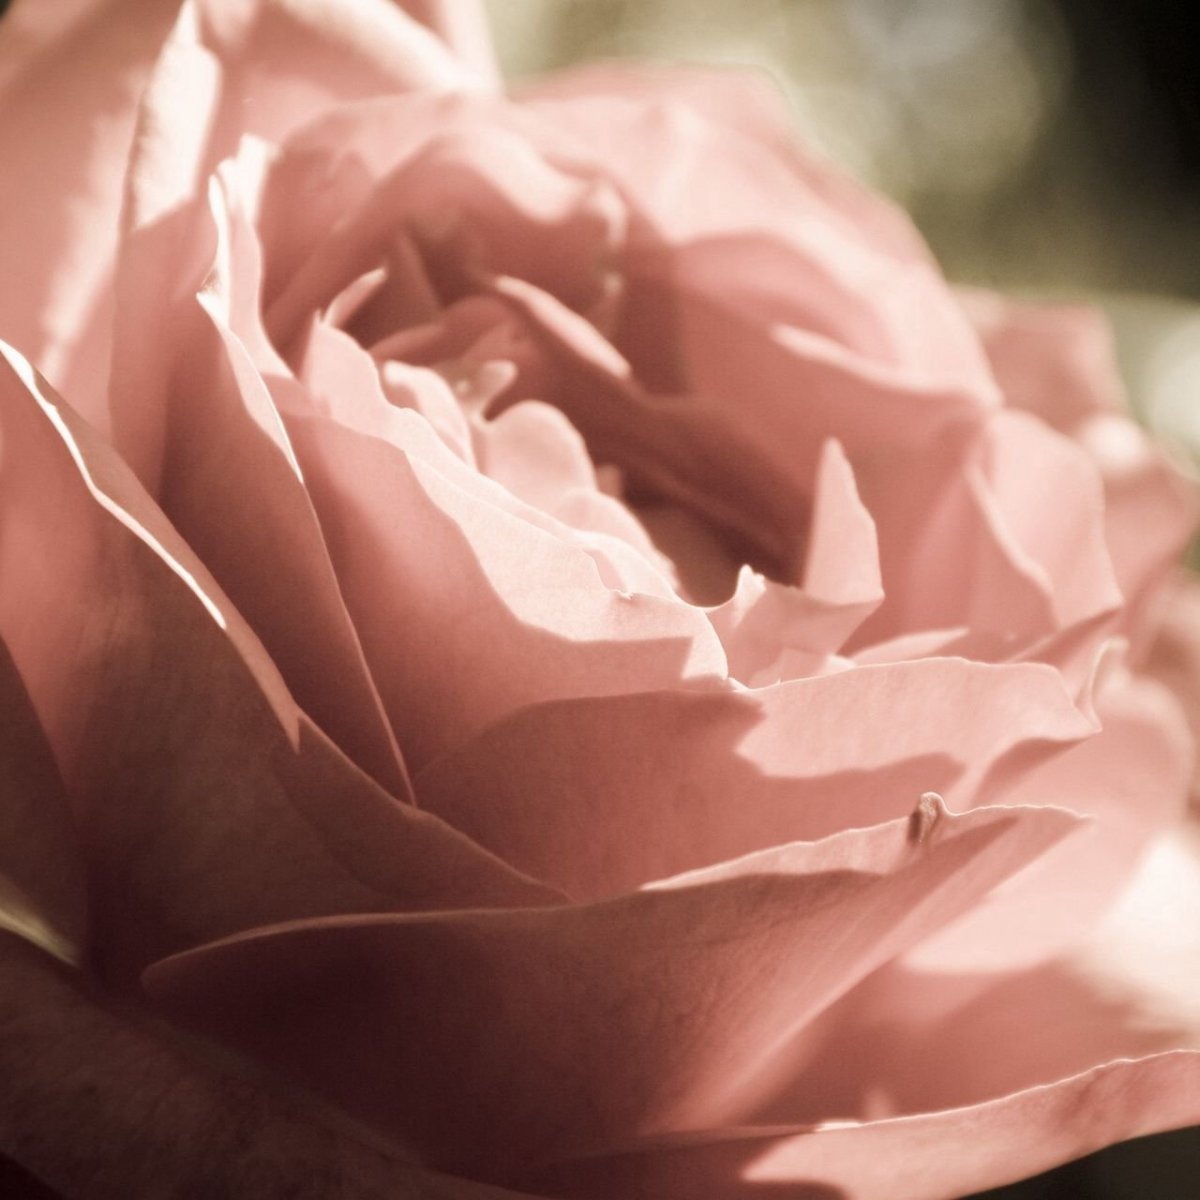 Цвет увядшей розы